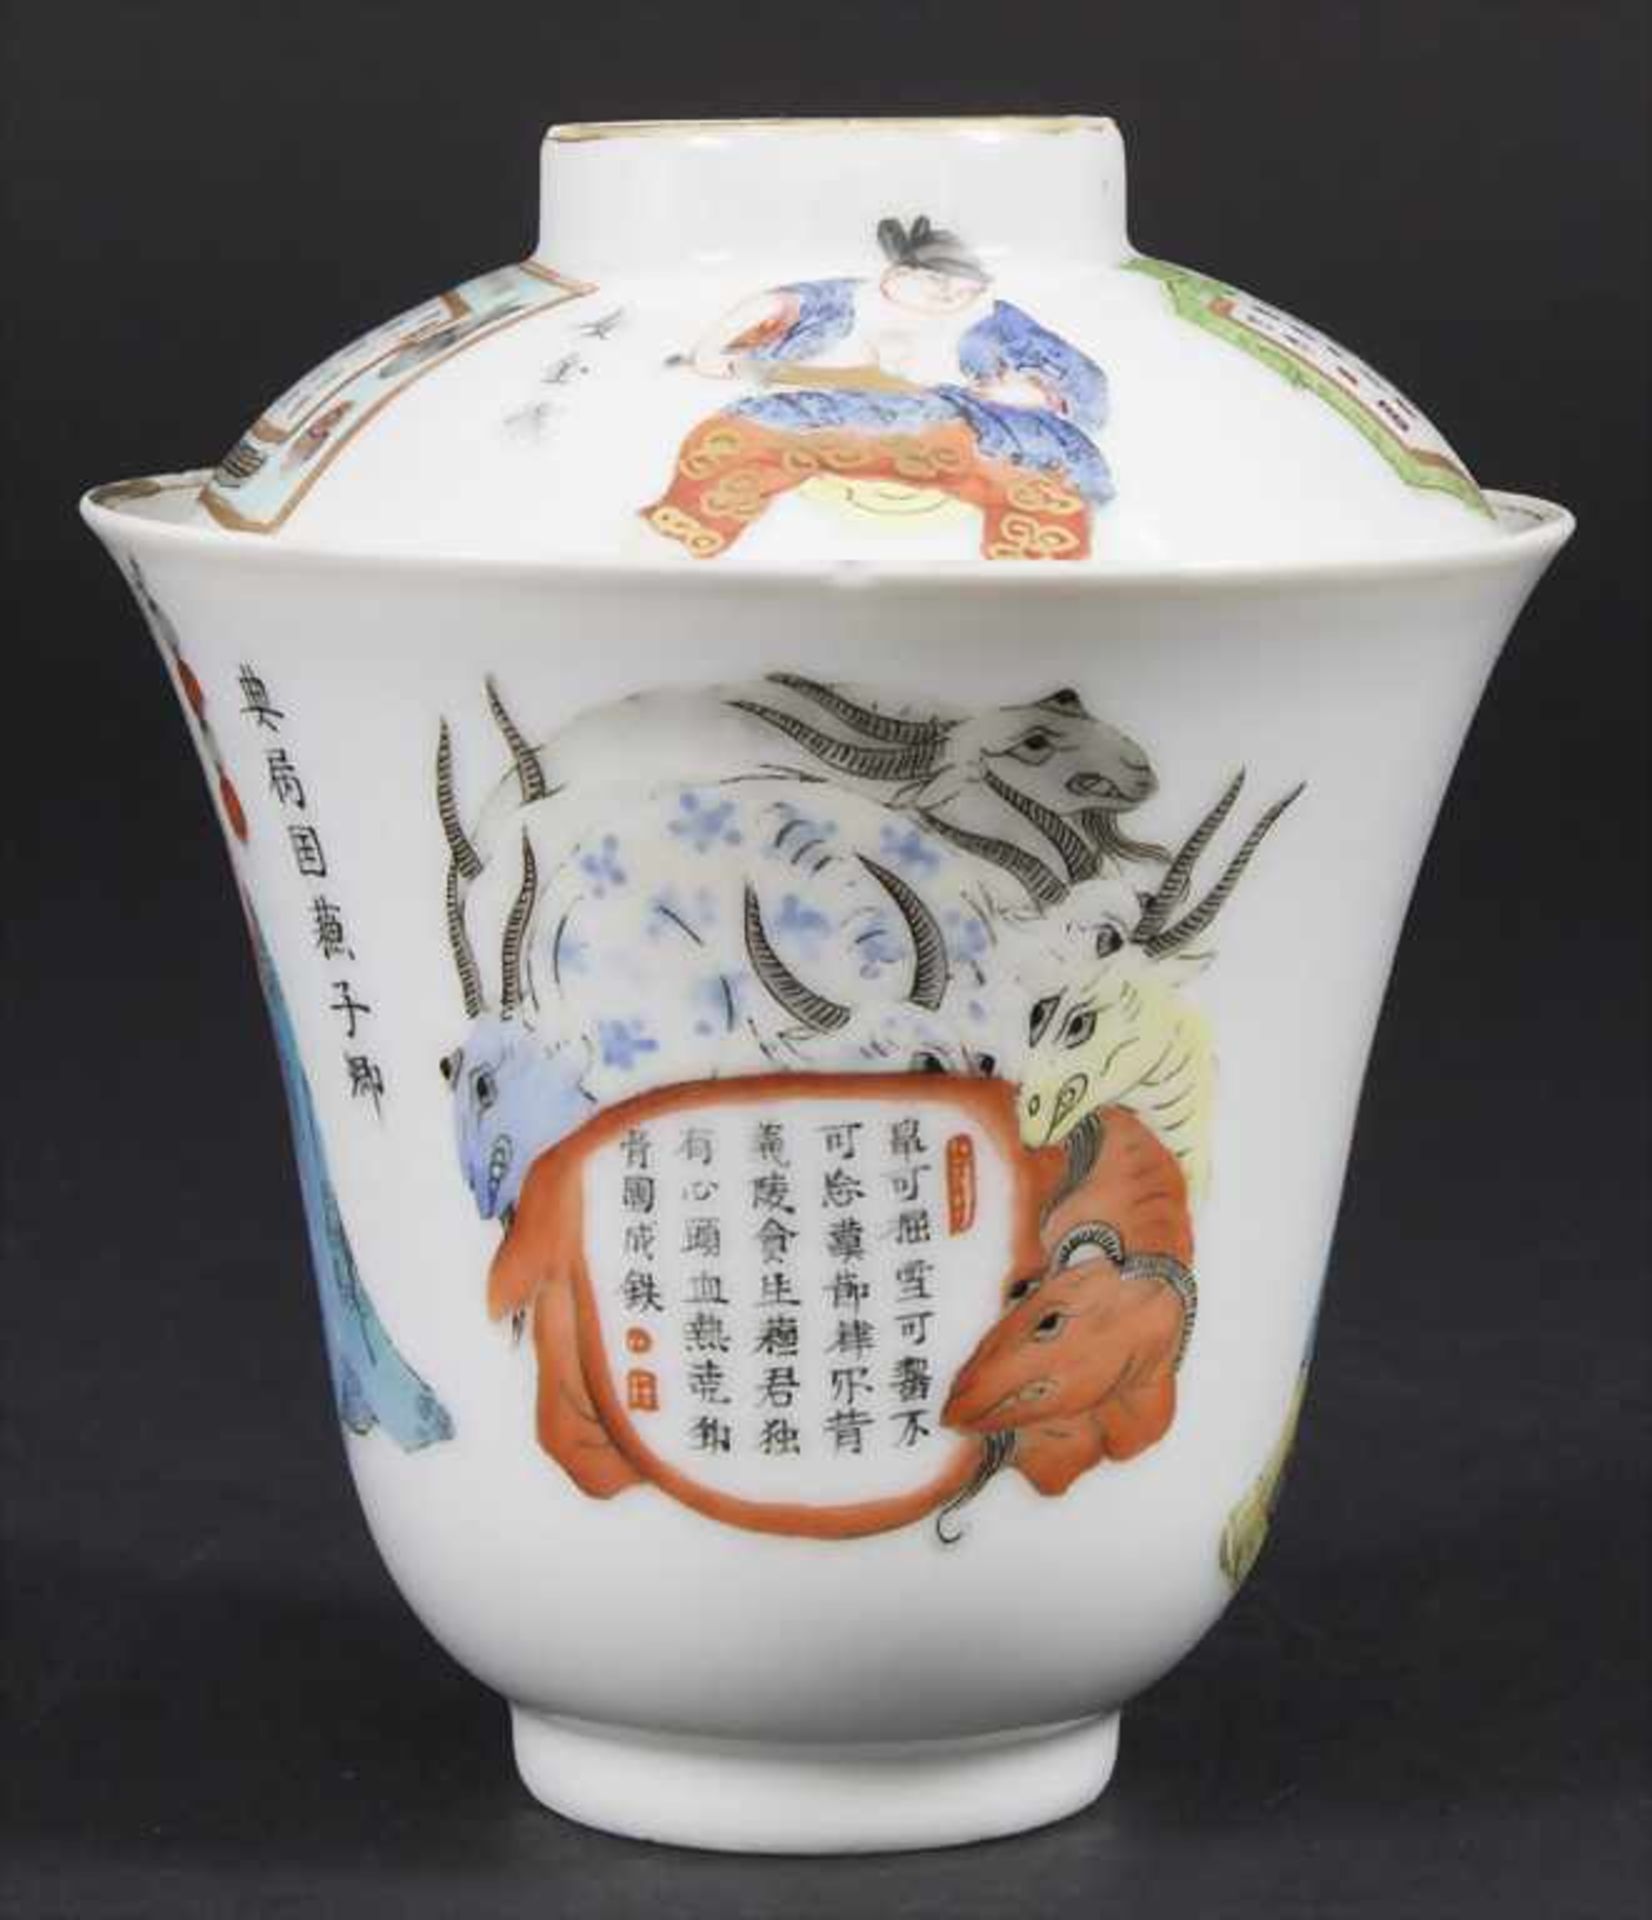 Porzellan-Deckelkumme / A porcelain lidded bowl, China, Qing-Dynastie (1644-1911), 18./19. Jh. - Bild 4 aus 6